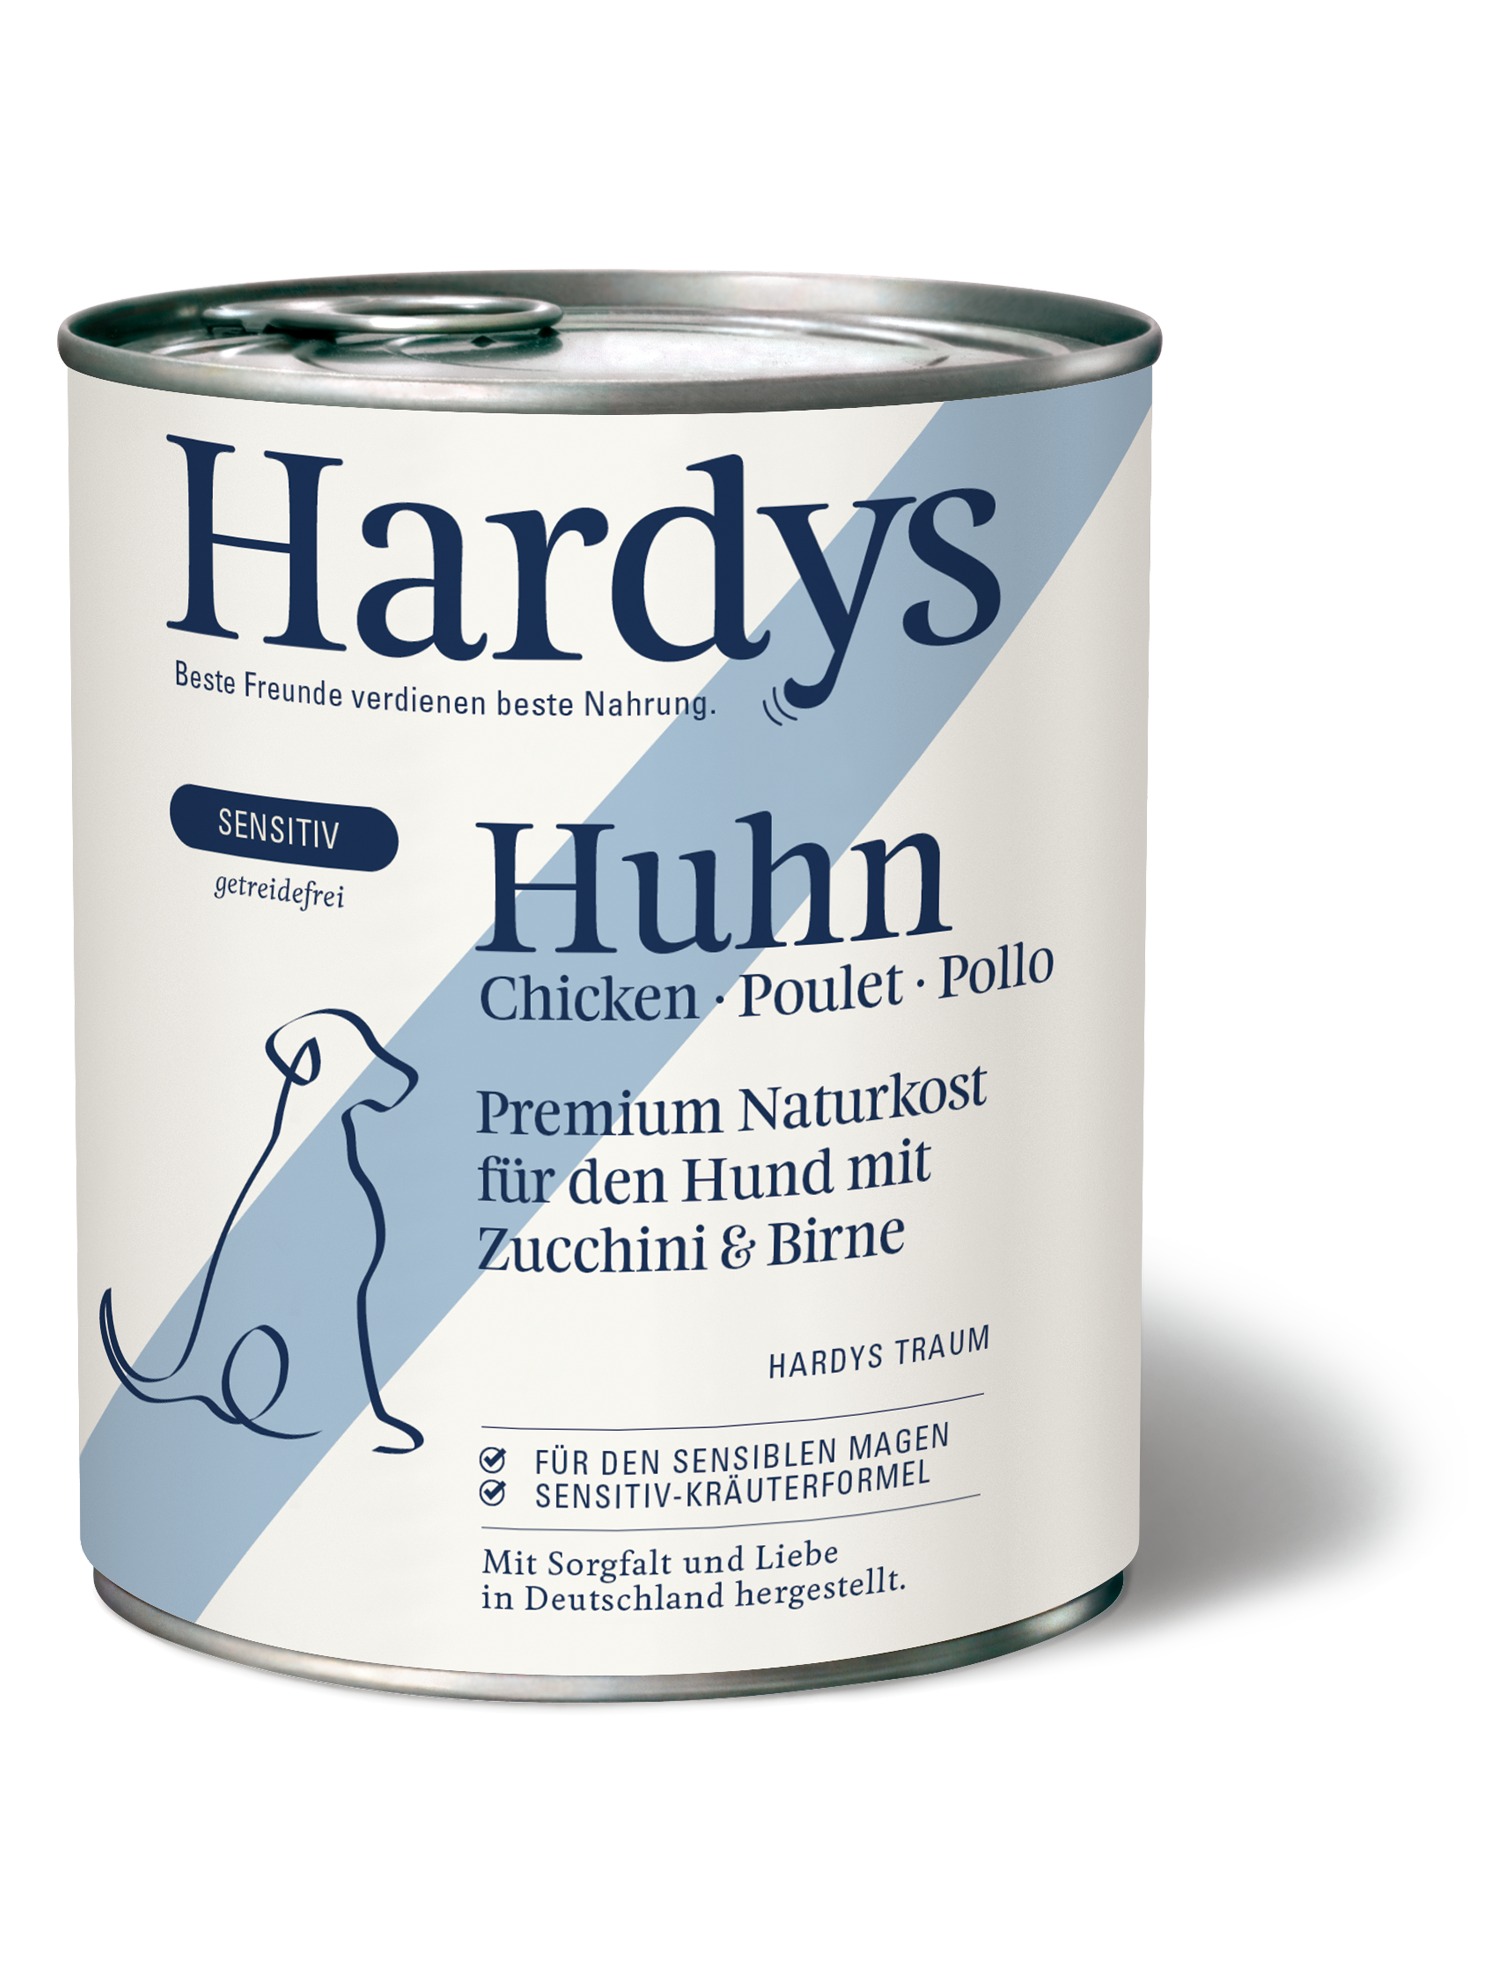 Hardys Sensitiv Huhn mit Zucchini & Birne, 800g